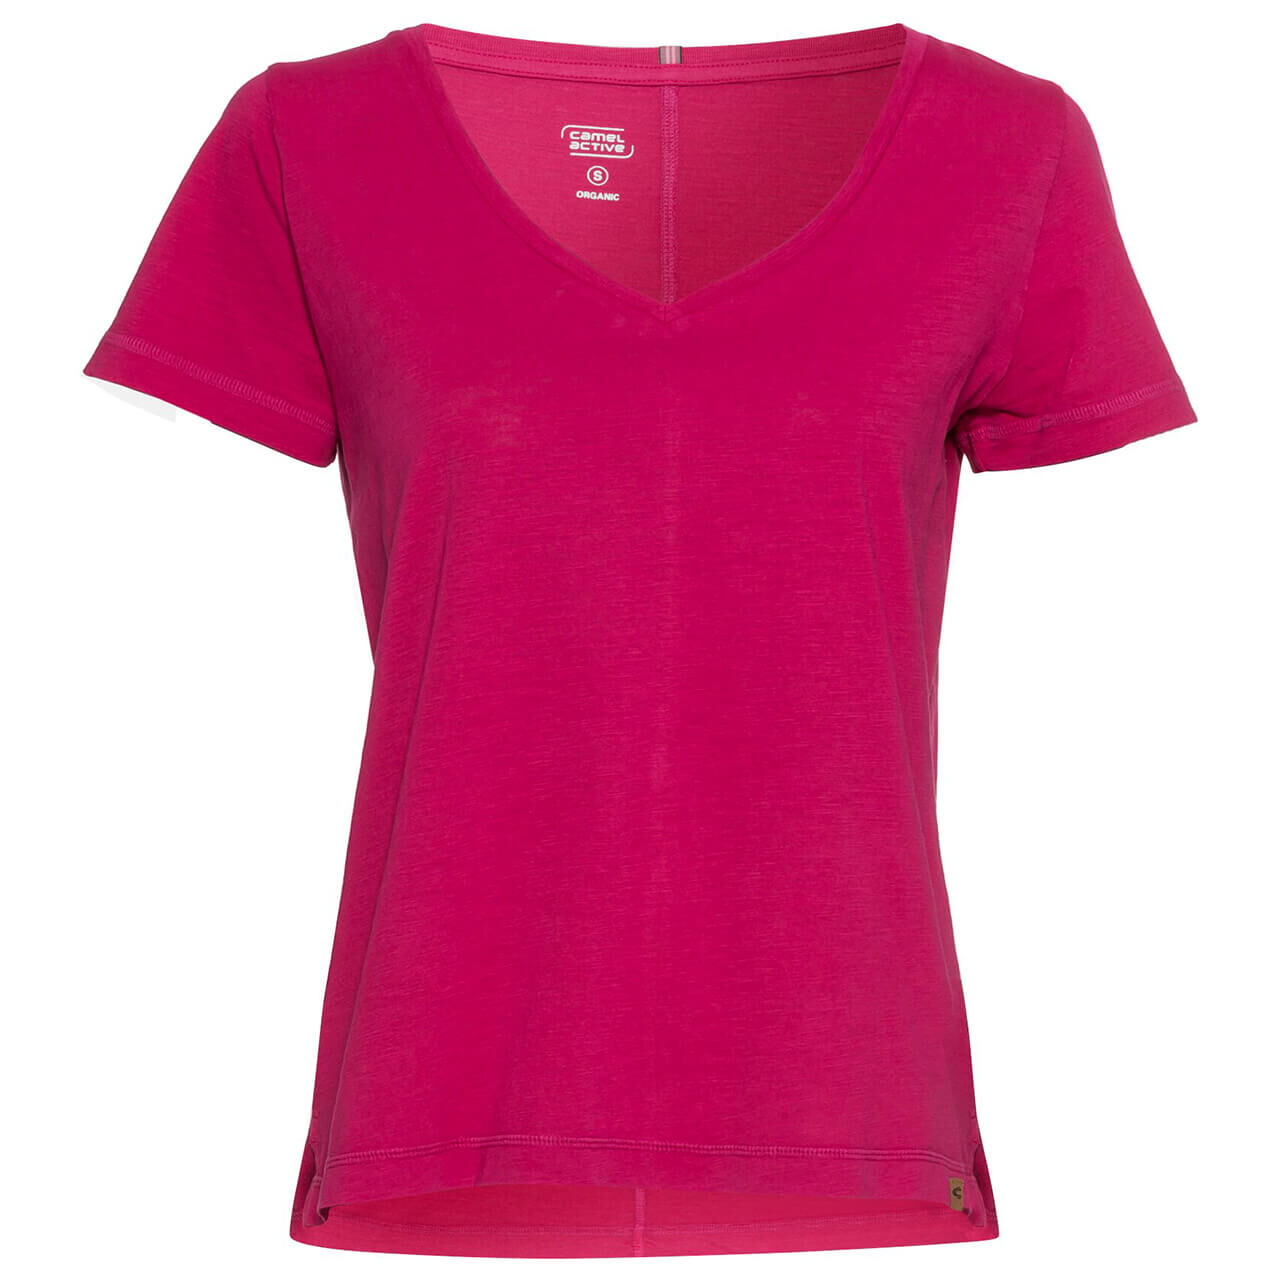 Camel active T-Shirt für Damen in Pink, FarbNr.: 58